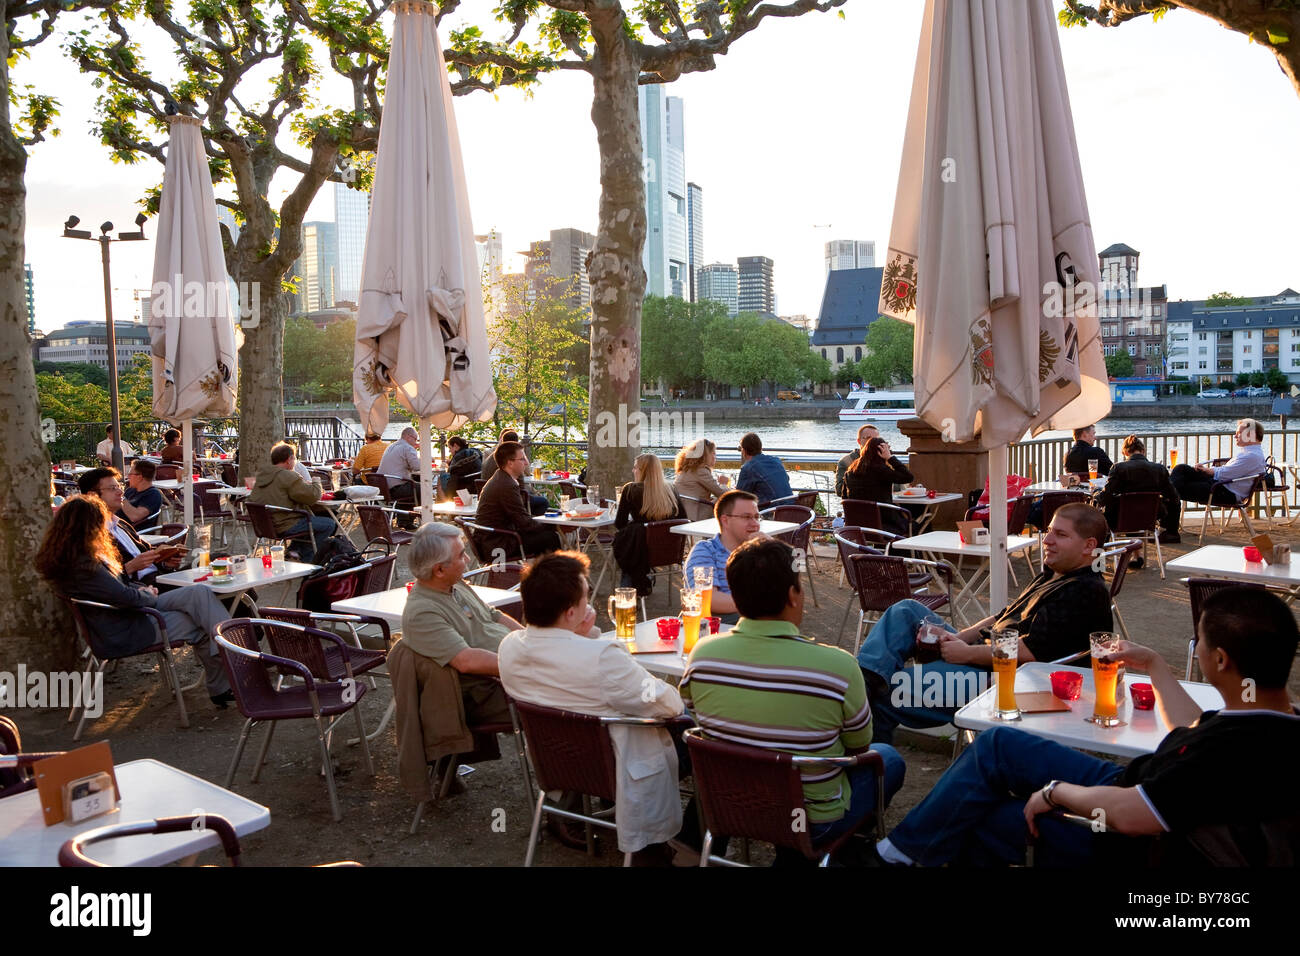 Außen Café & Bier Garten vom Mainufer, Frankfurt am Main, Deutschland Stockfoto